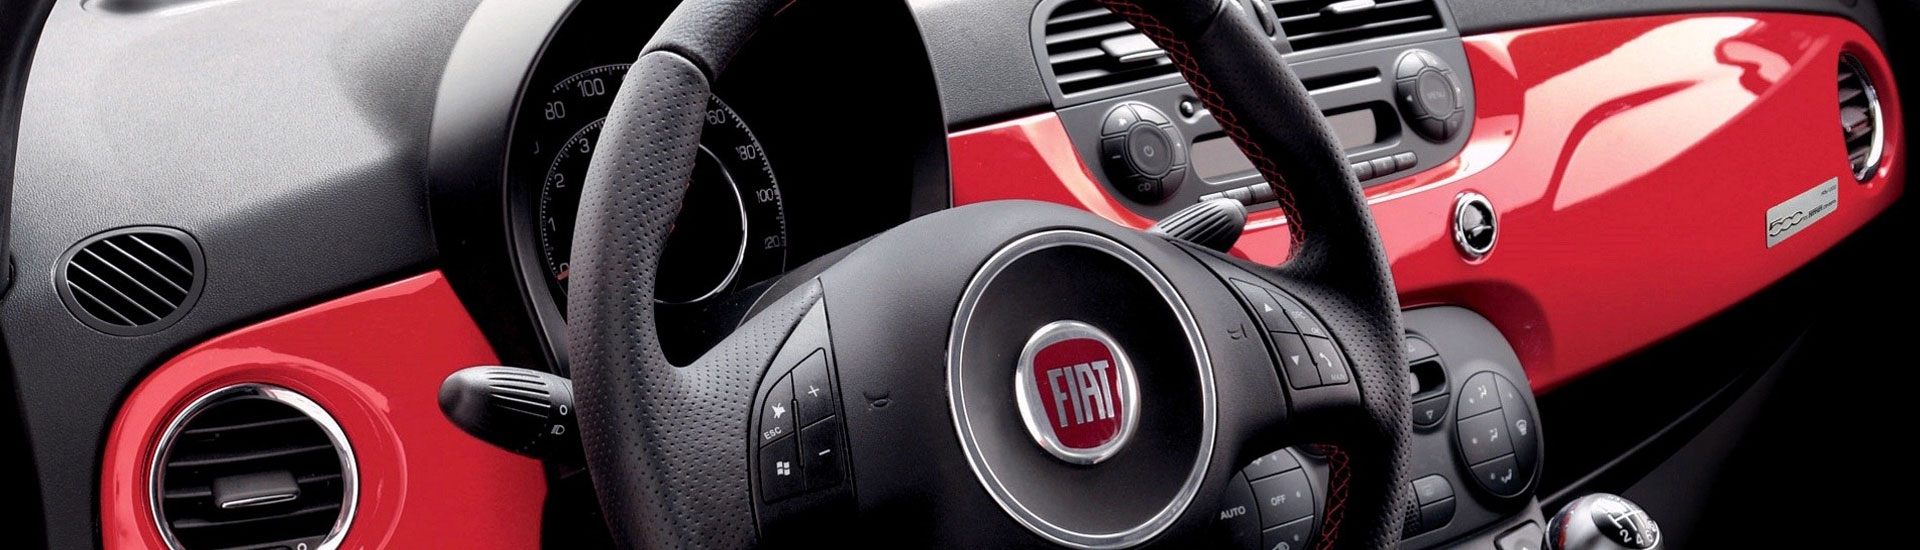 2015 Fiat 500e Custom Dash Kits